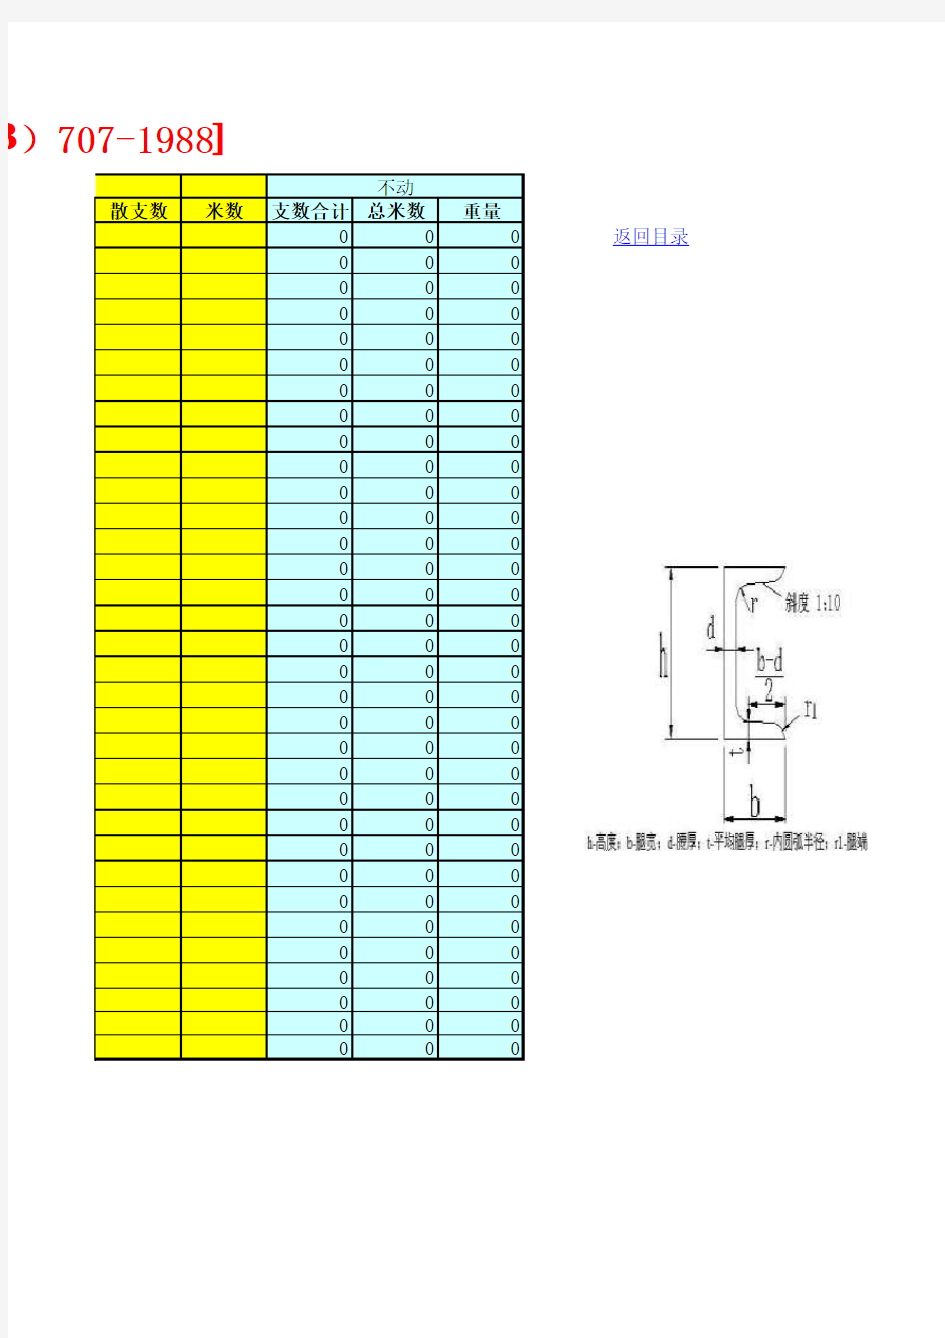 钢材理论重量计算软件表